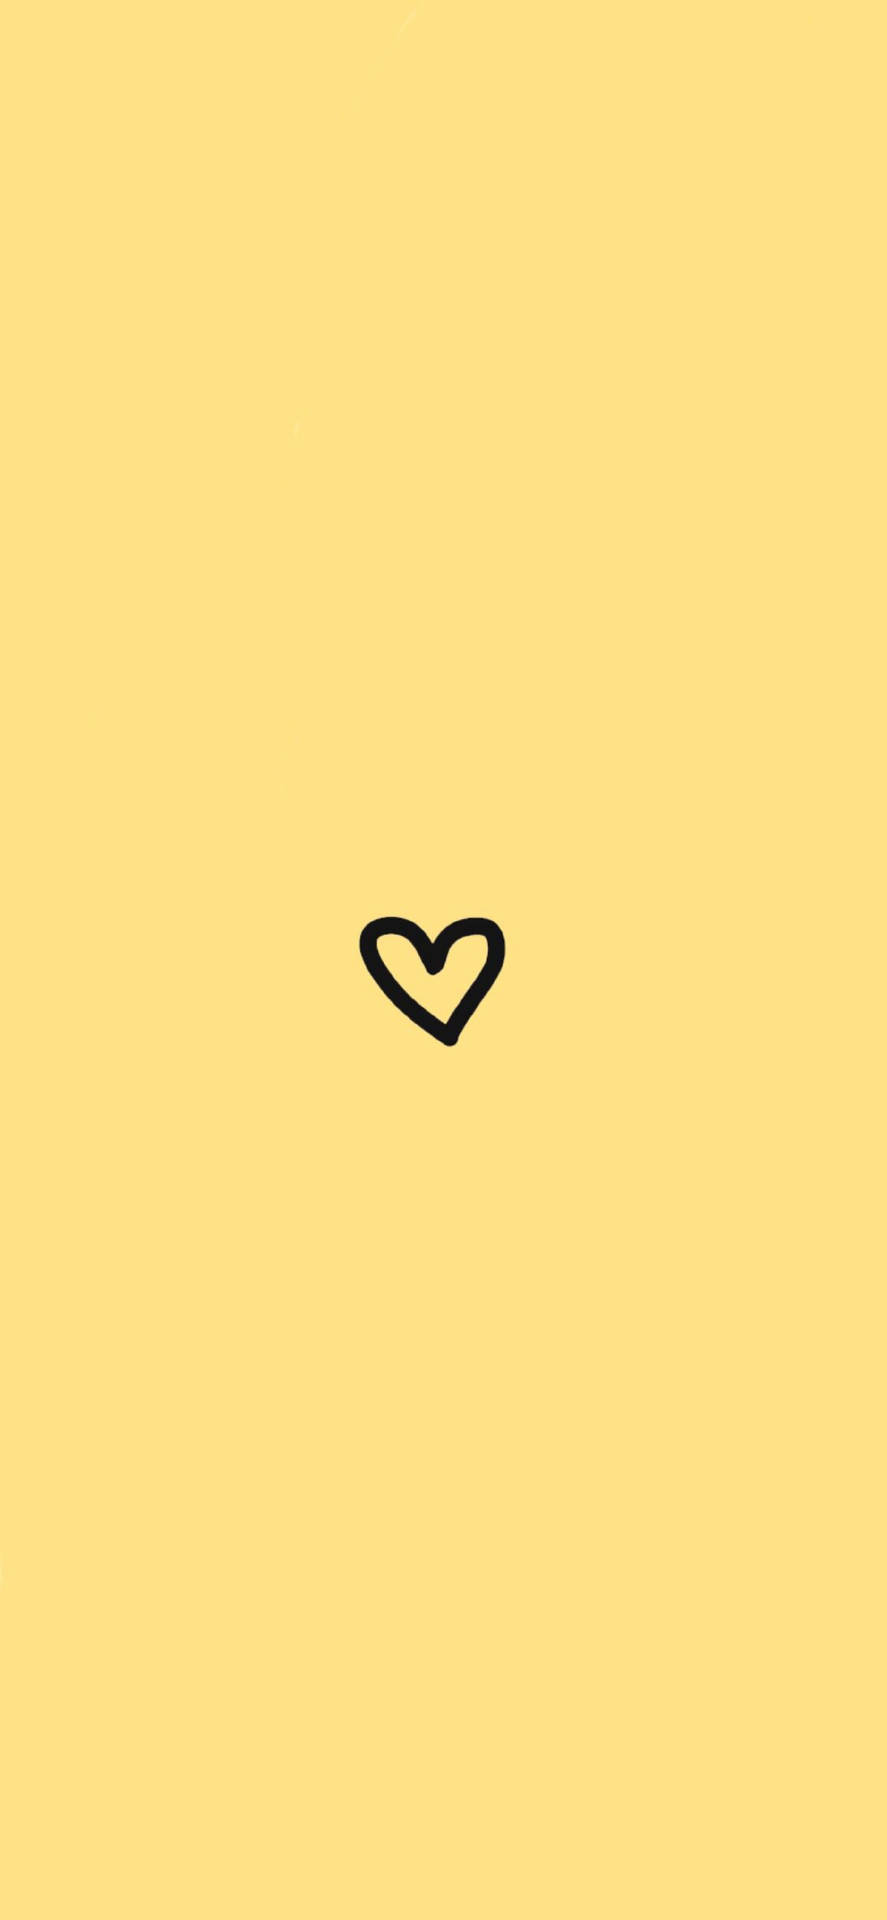 Minimialistiskthjärta Gult Instagram-profilbild. Wallpaper